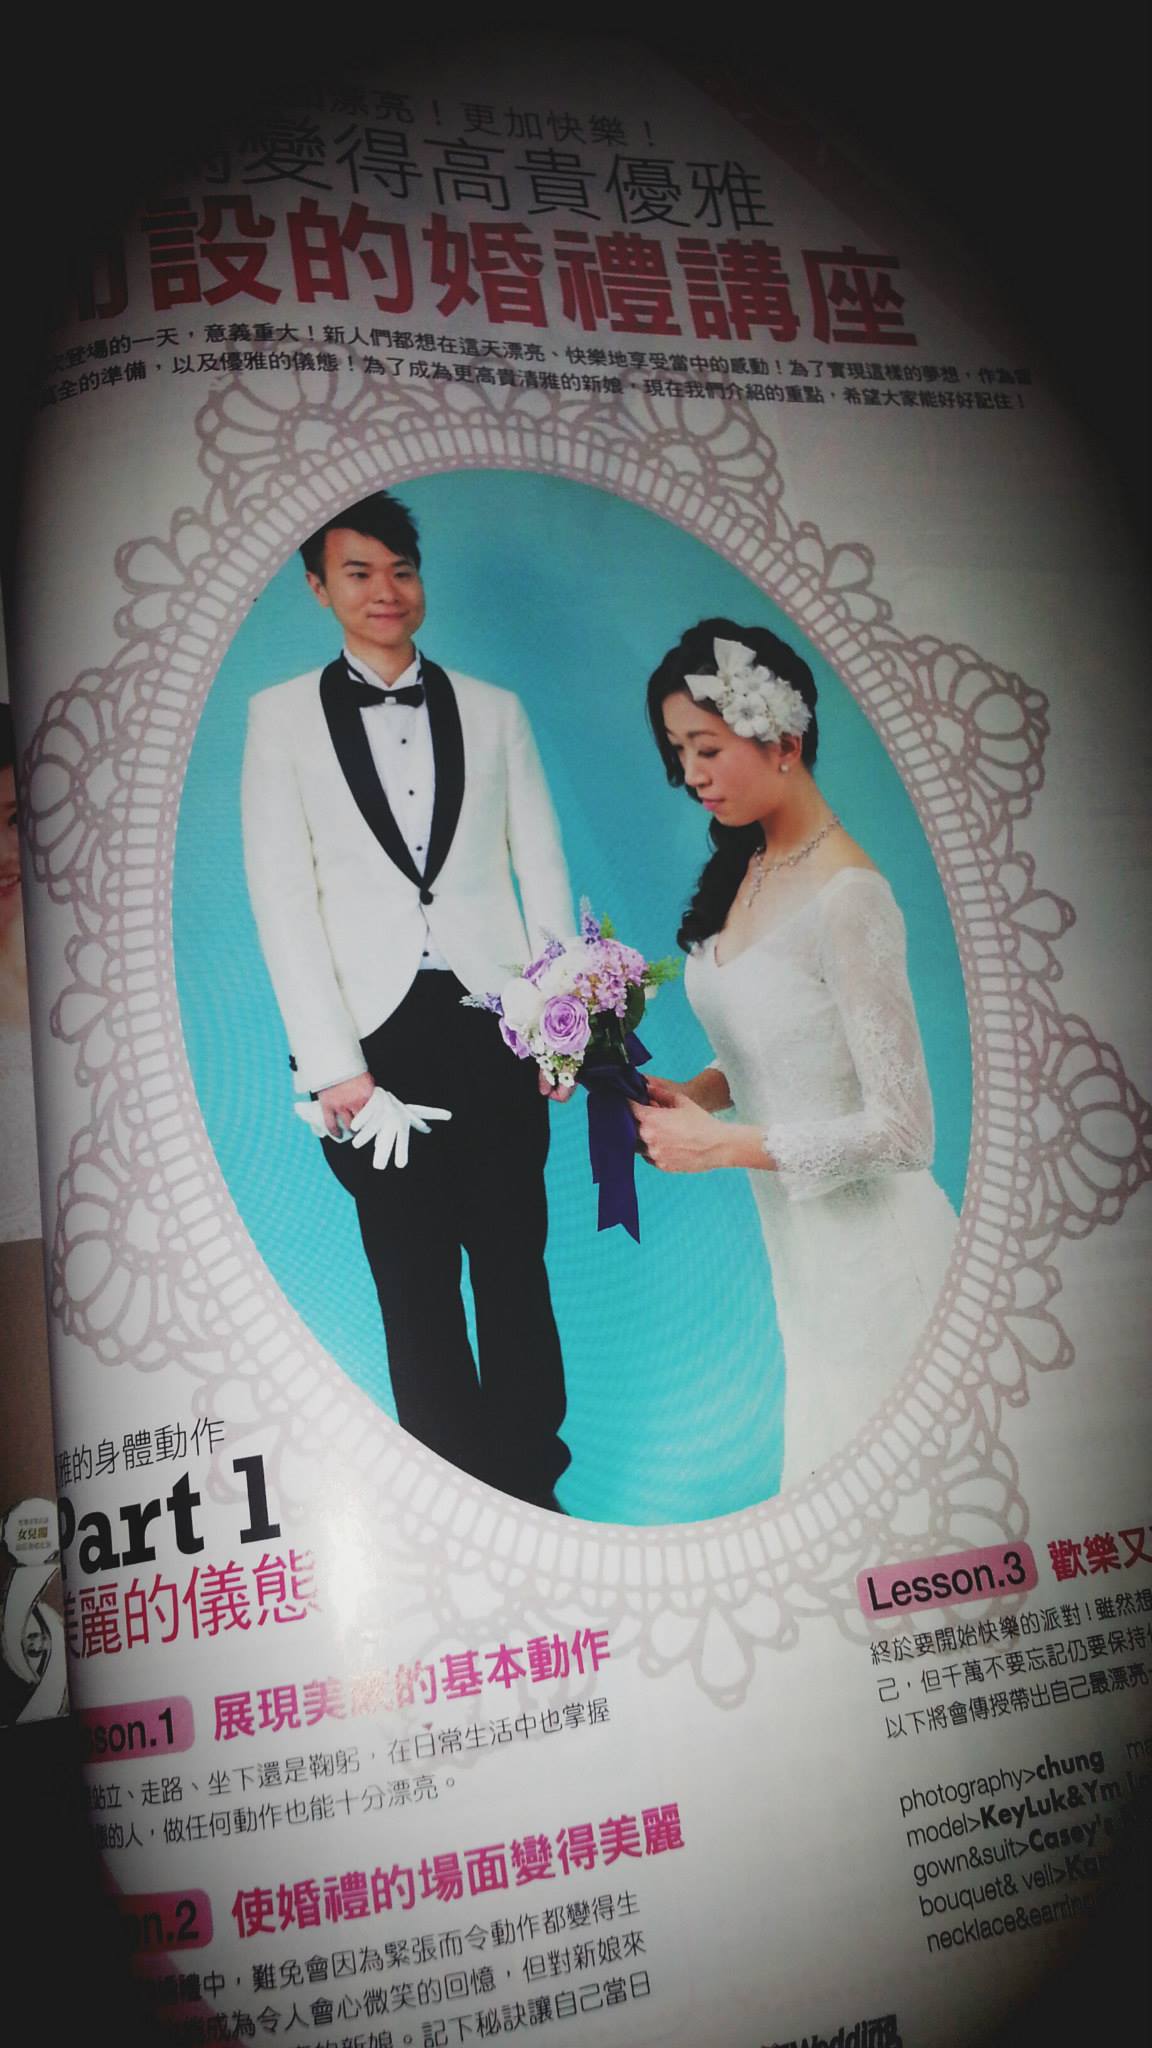  鎖匙 Key Luk演藝人工作紀錄: 婚禮雜誌 - 平面模特